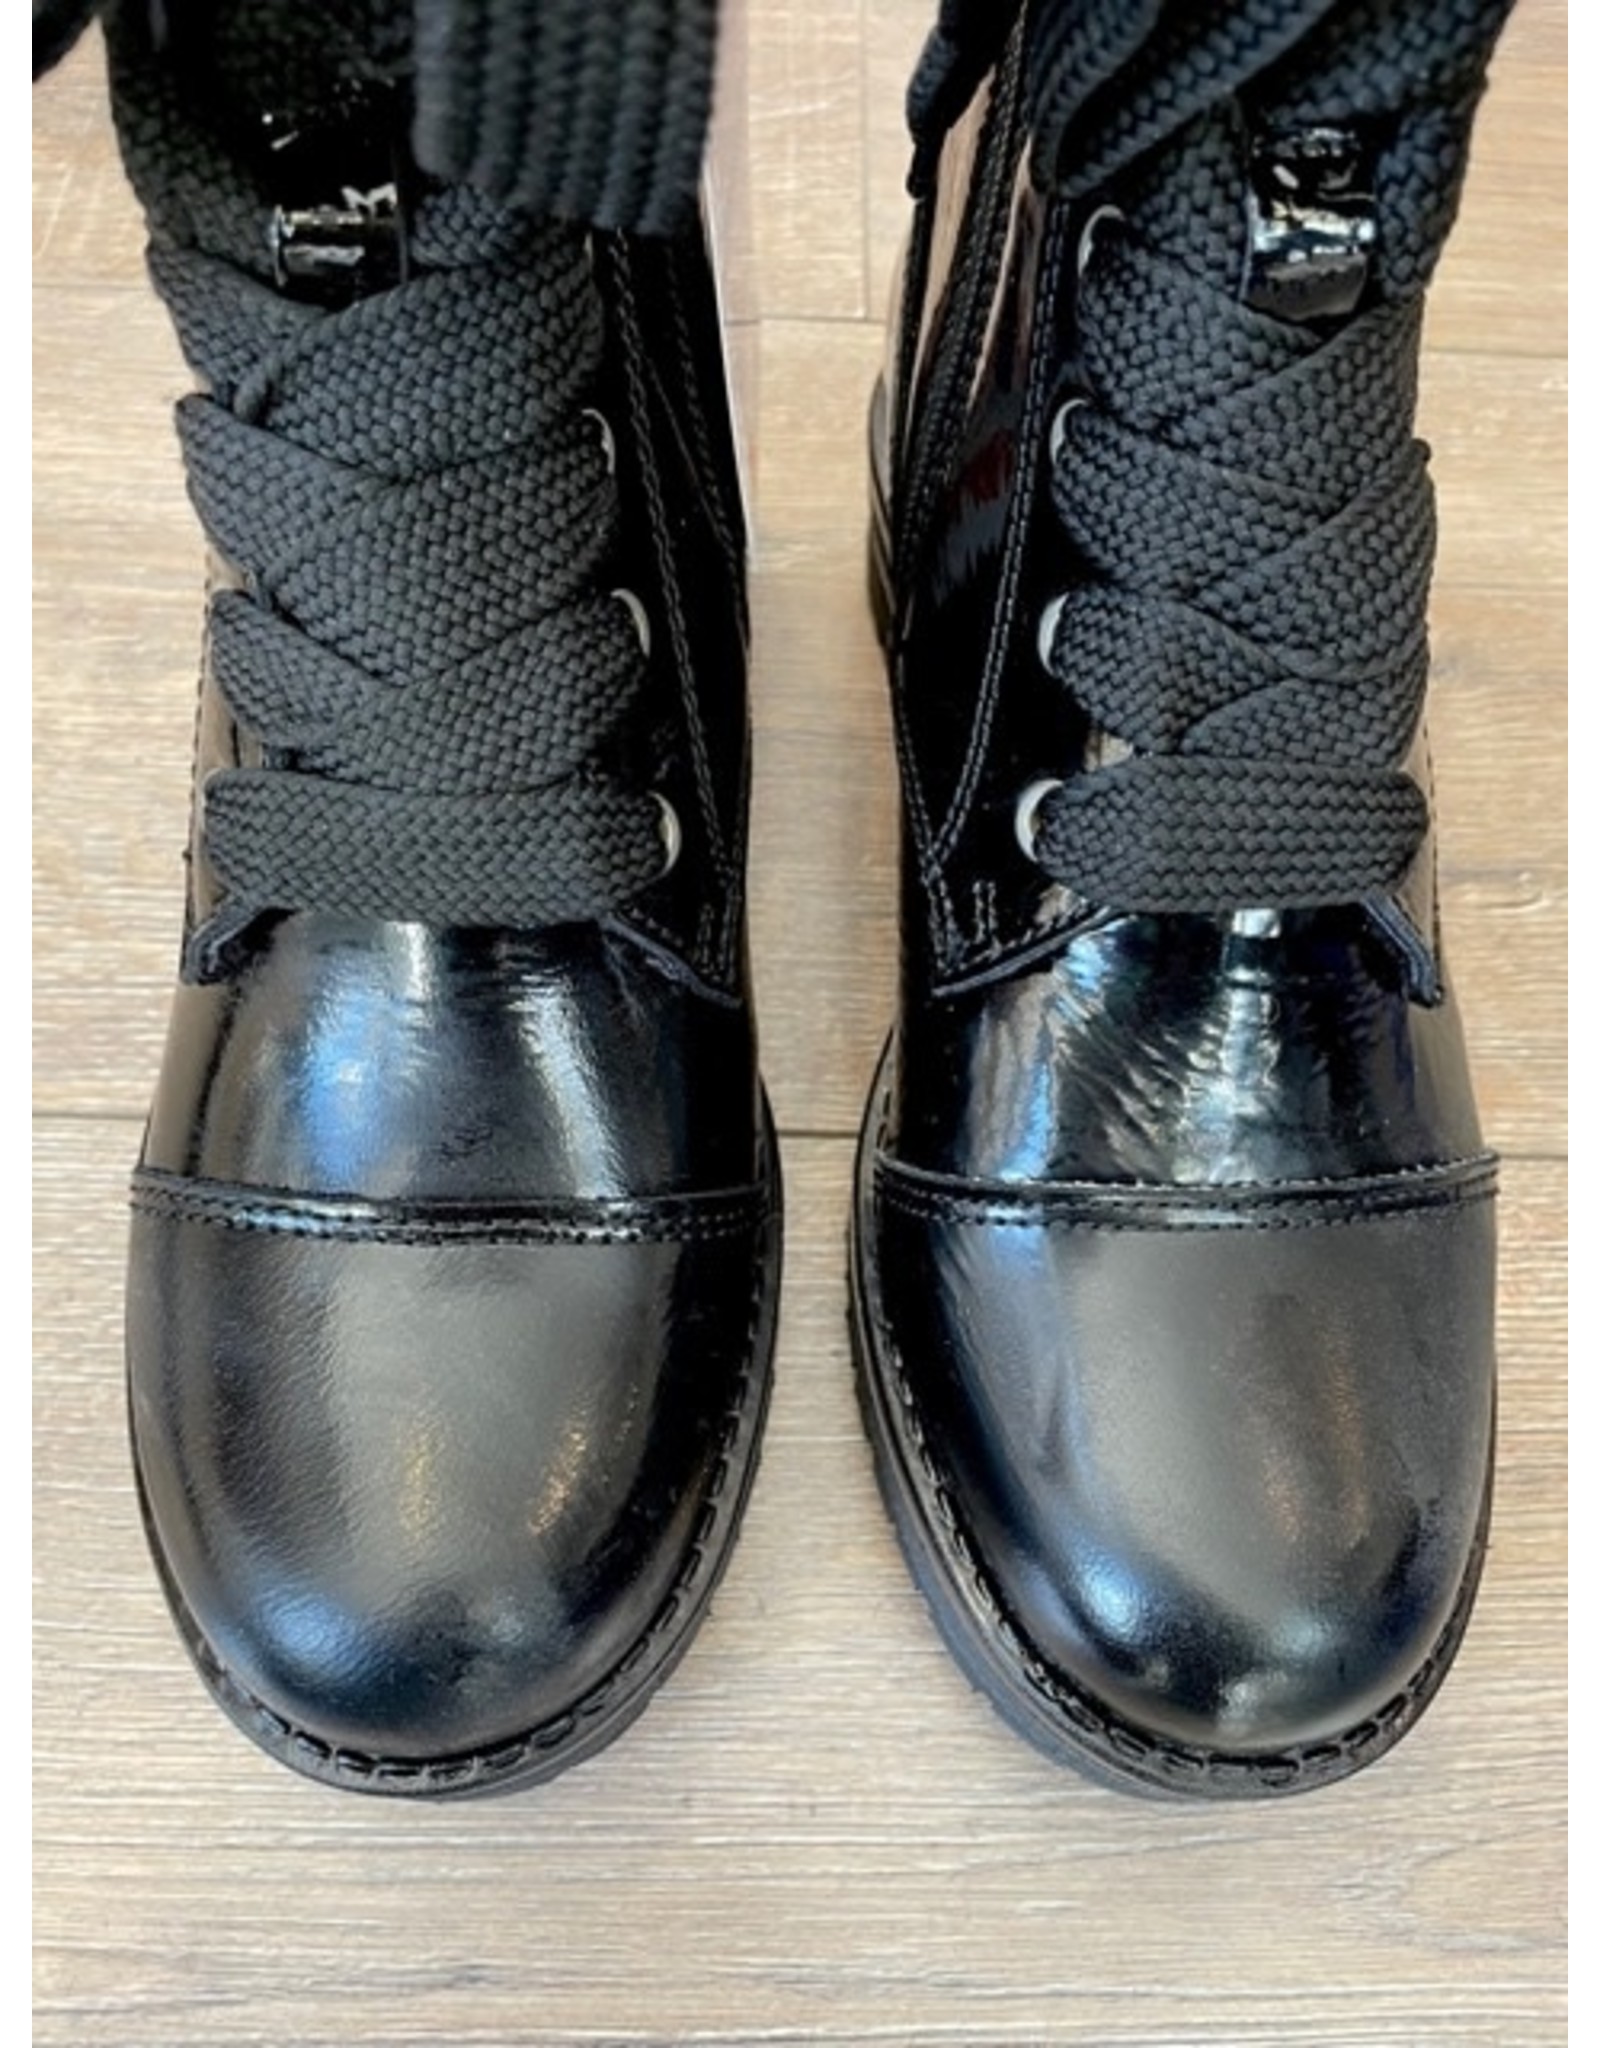 Bos & Co Bos & Co - Paulie waterproof boot (black)